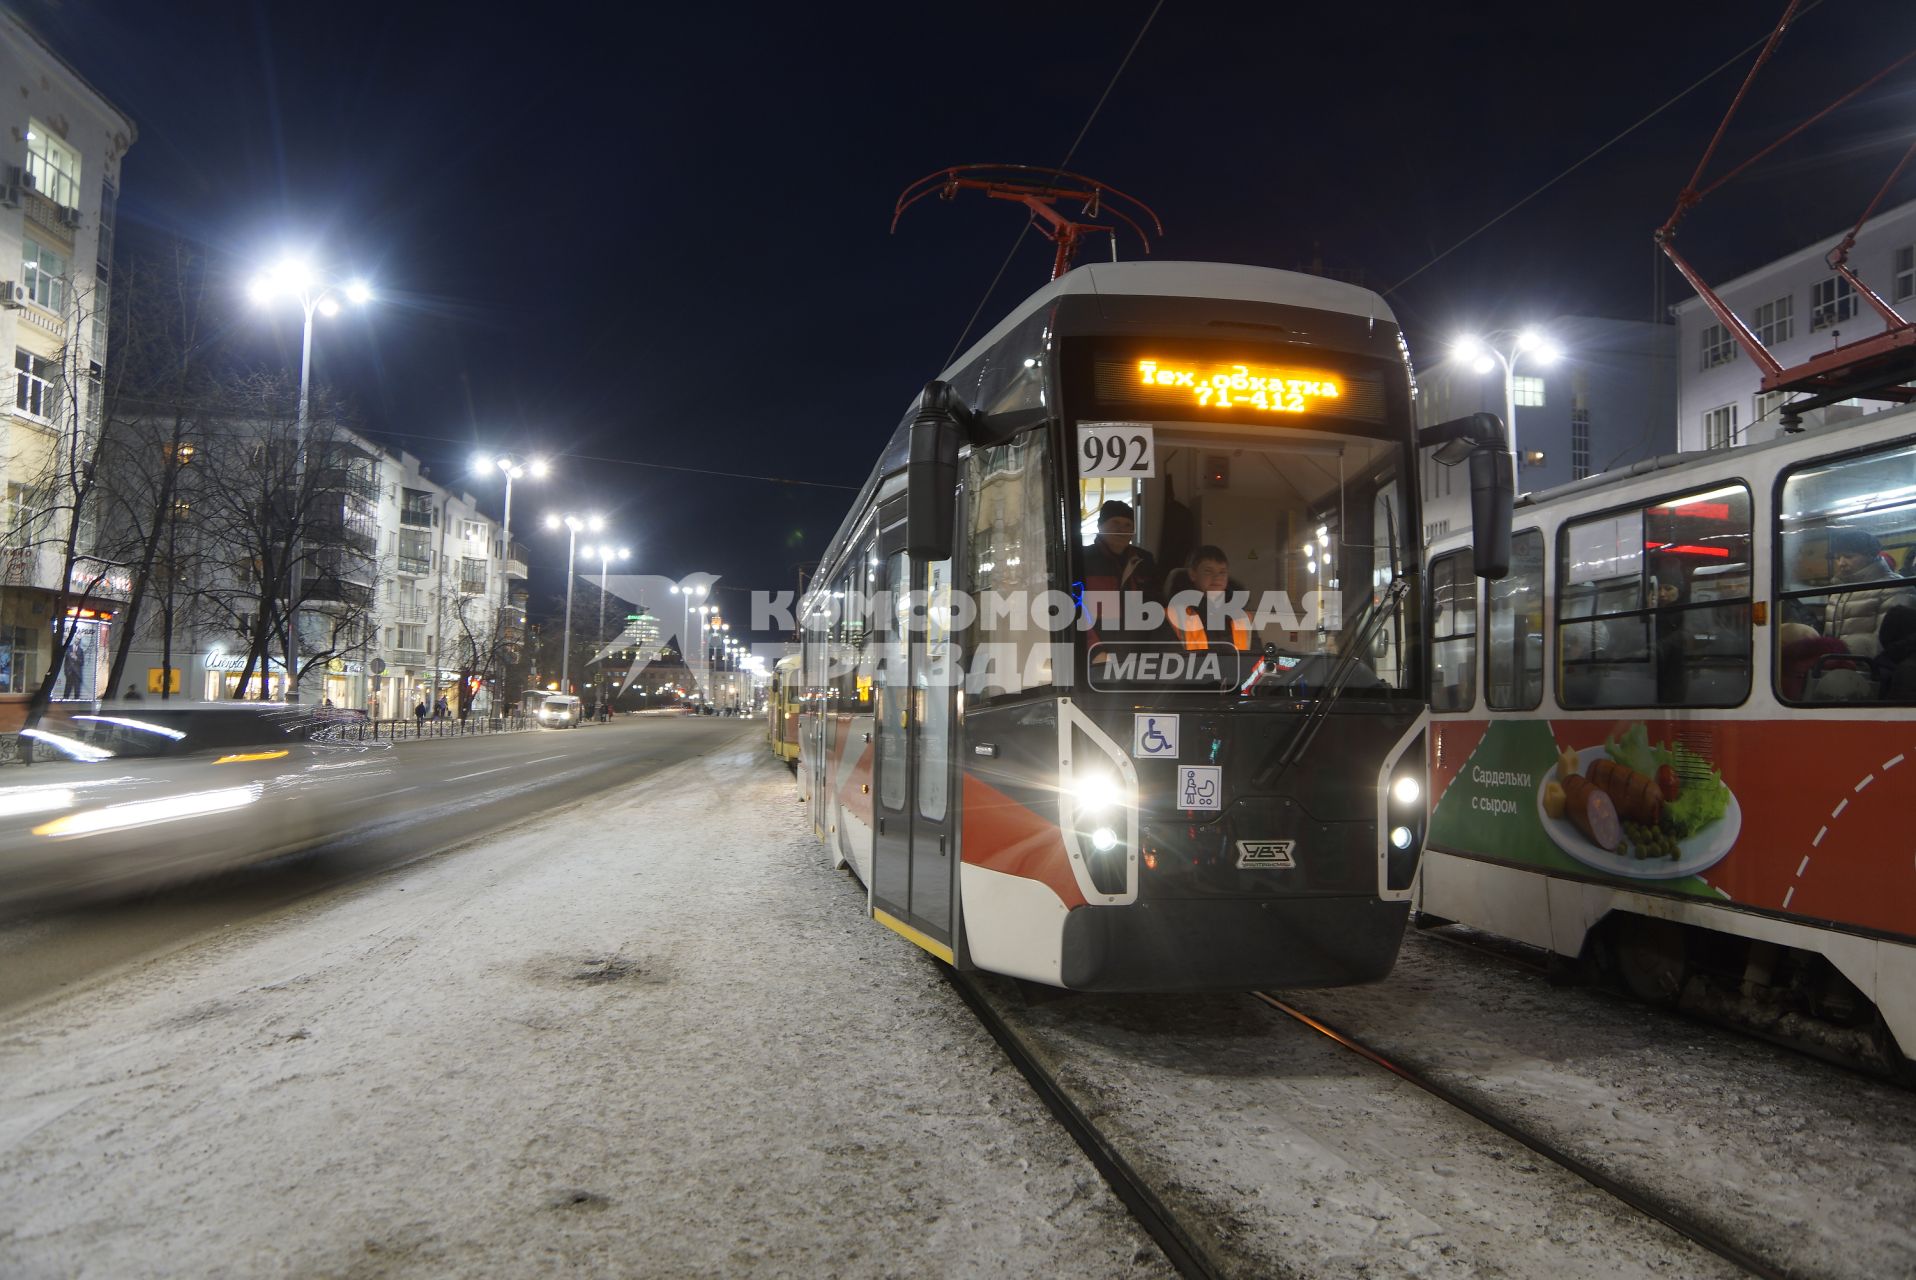 Екатеринбург. Вид из кабины нового трамвая  производства \'УралТрансМаш\' во время технической обкатки в городе